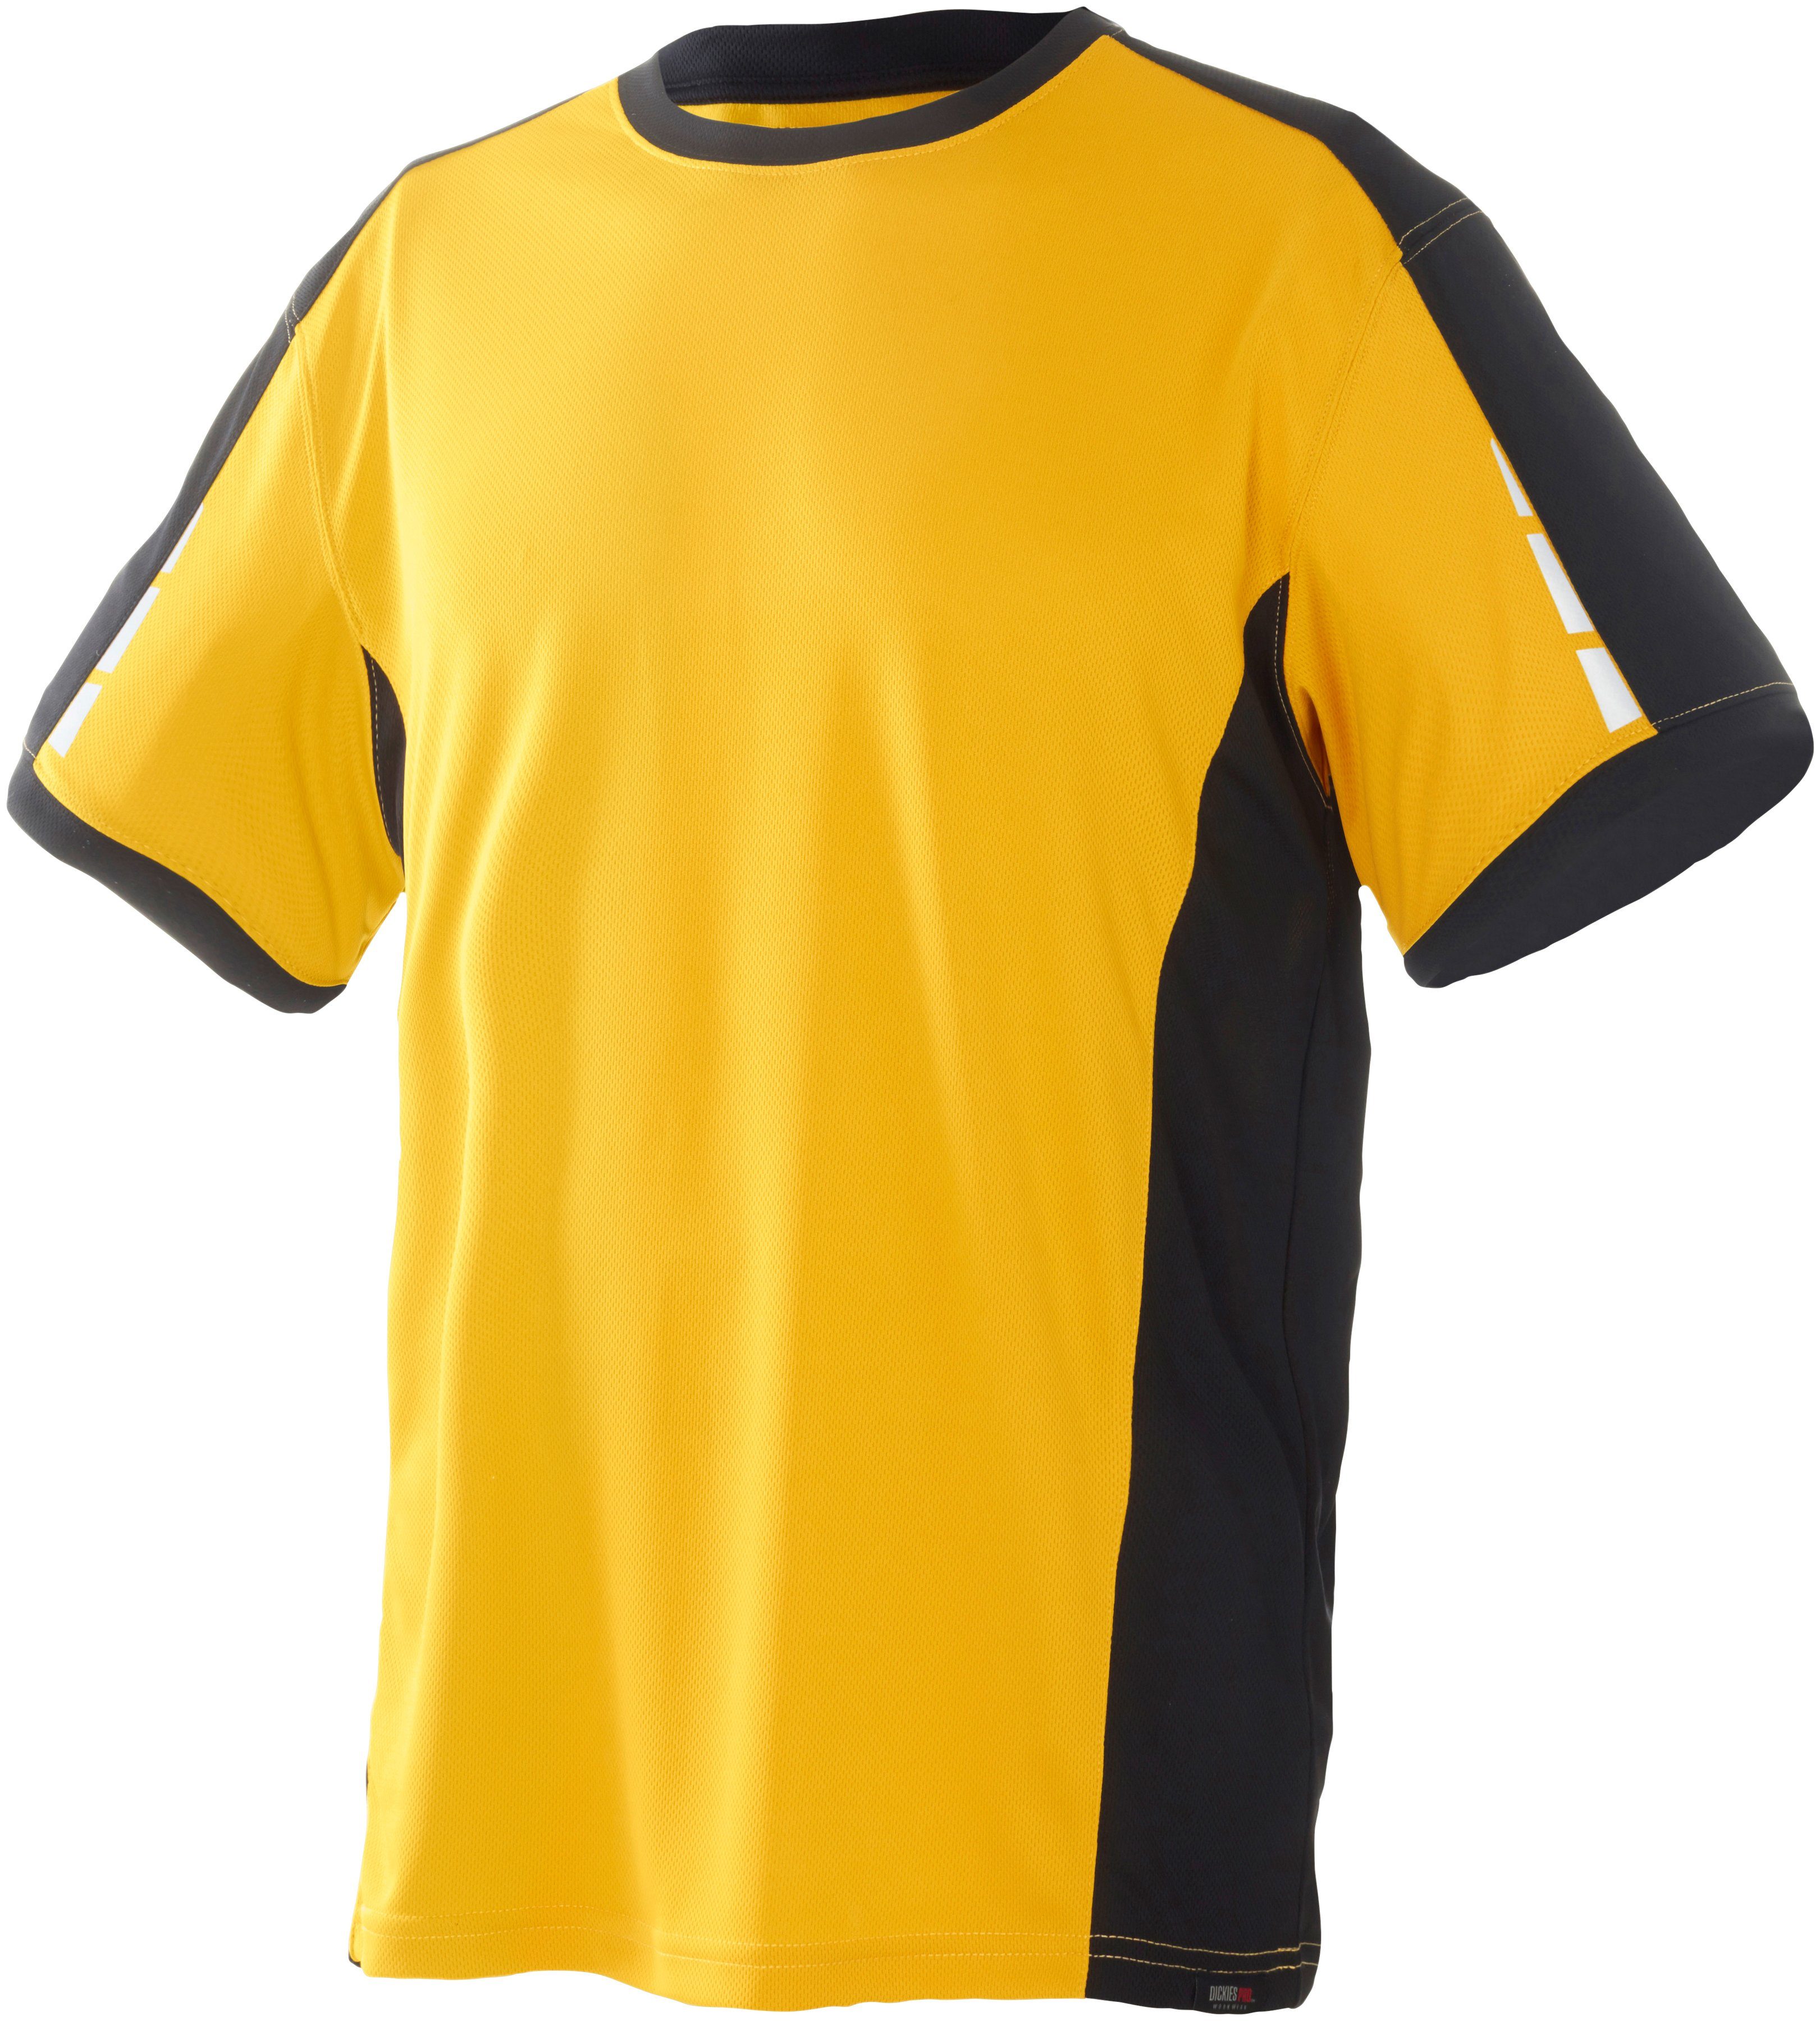 Dickies T-Shirt Pro mit reflektierenden Details an den Ärmeln gelb-schwarz | T-Shirts